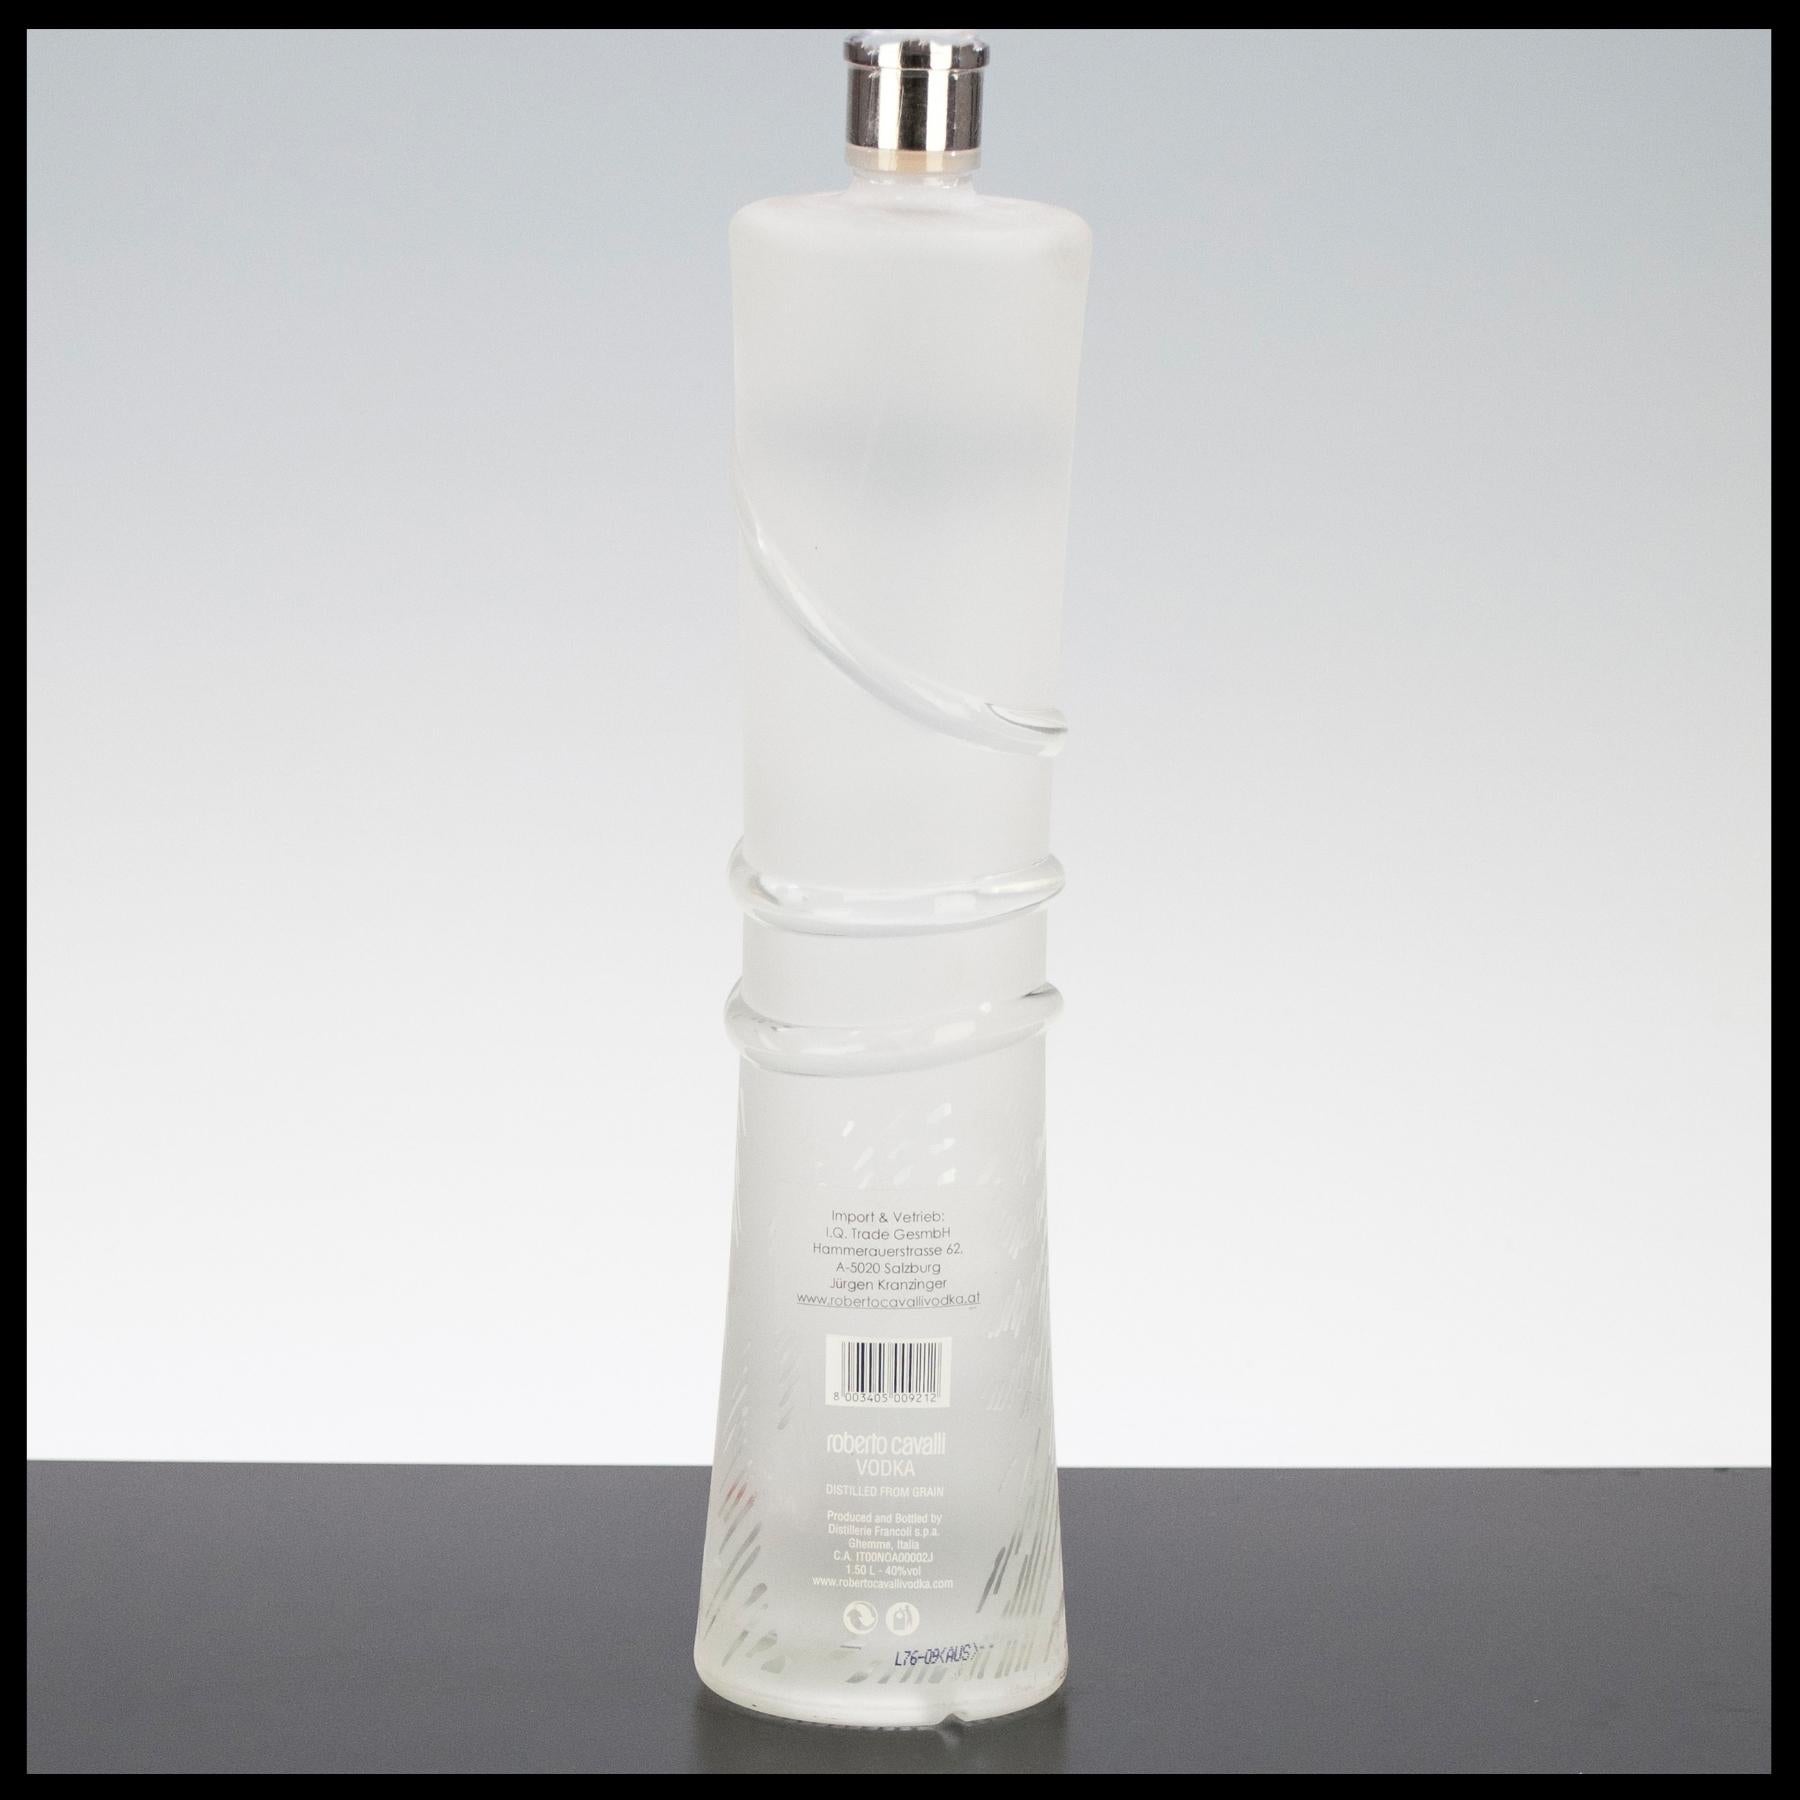 Roberto Cavalli Vodka 1,5L - 40% Vol. - Trinklusiv